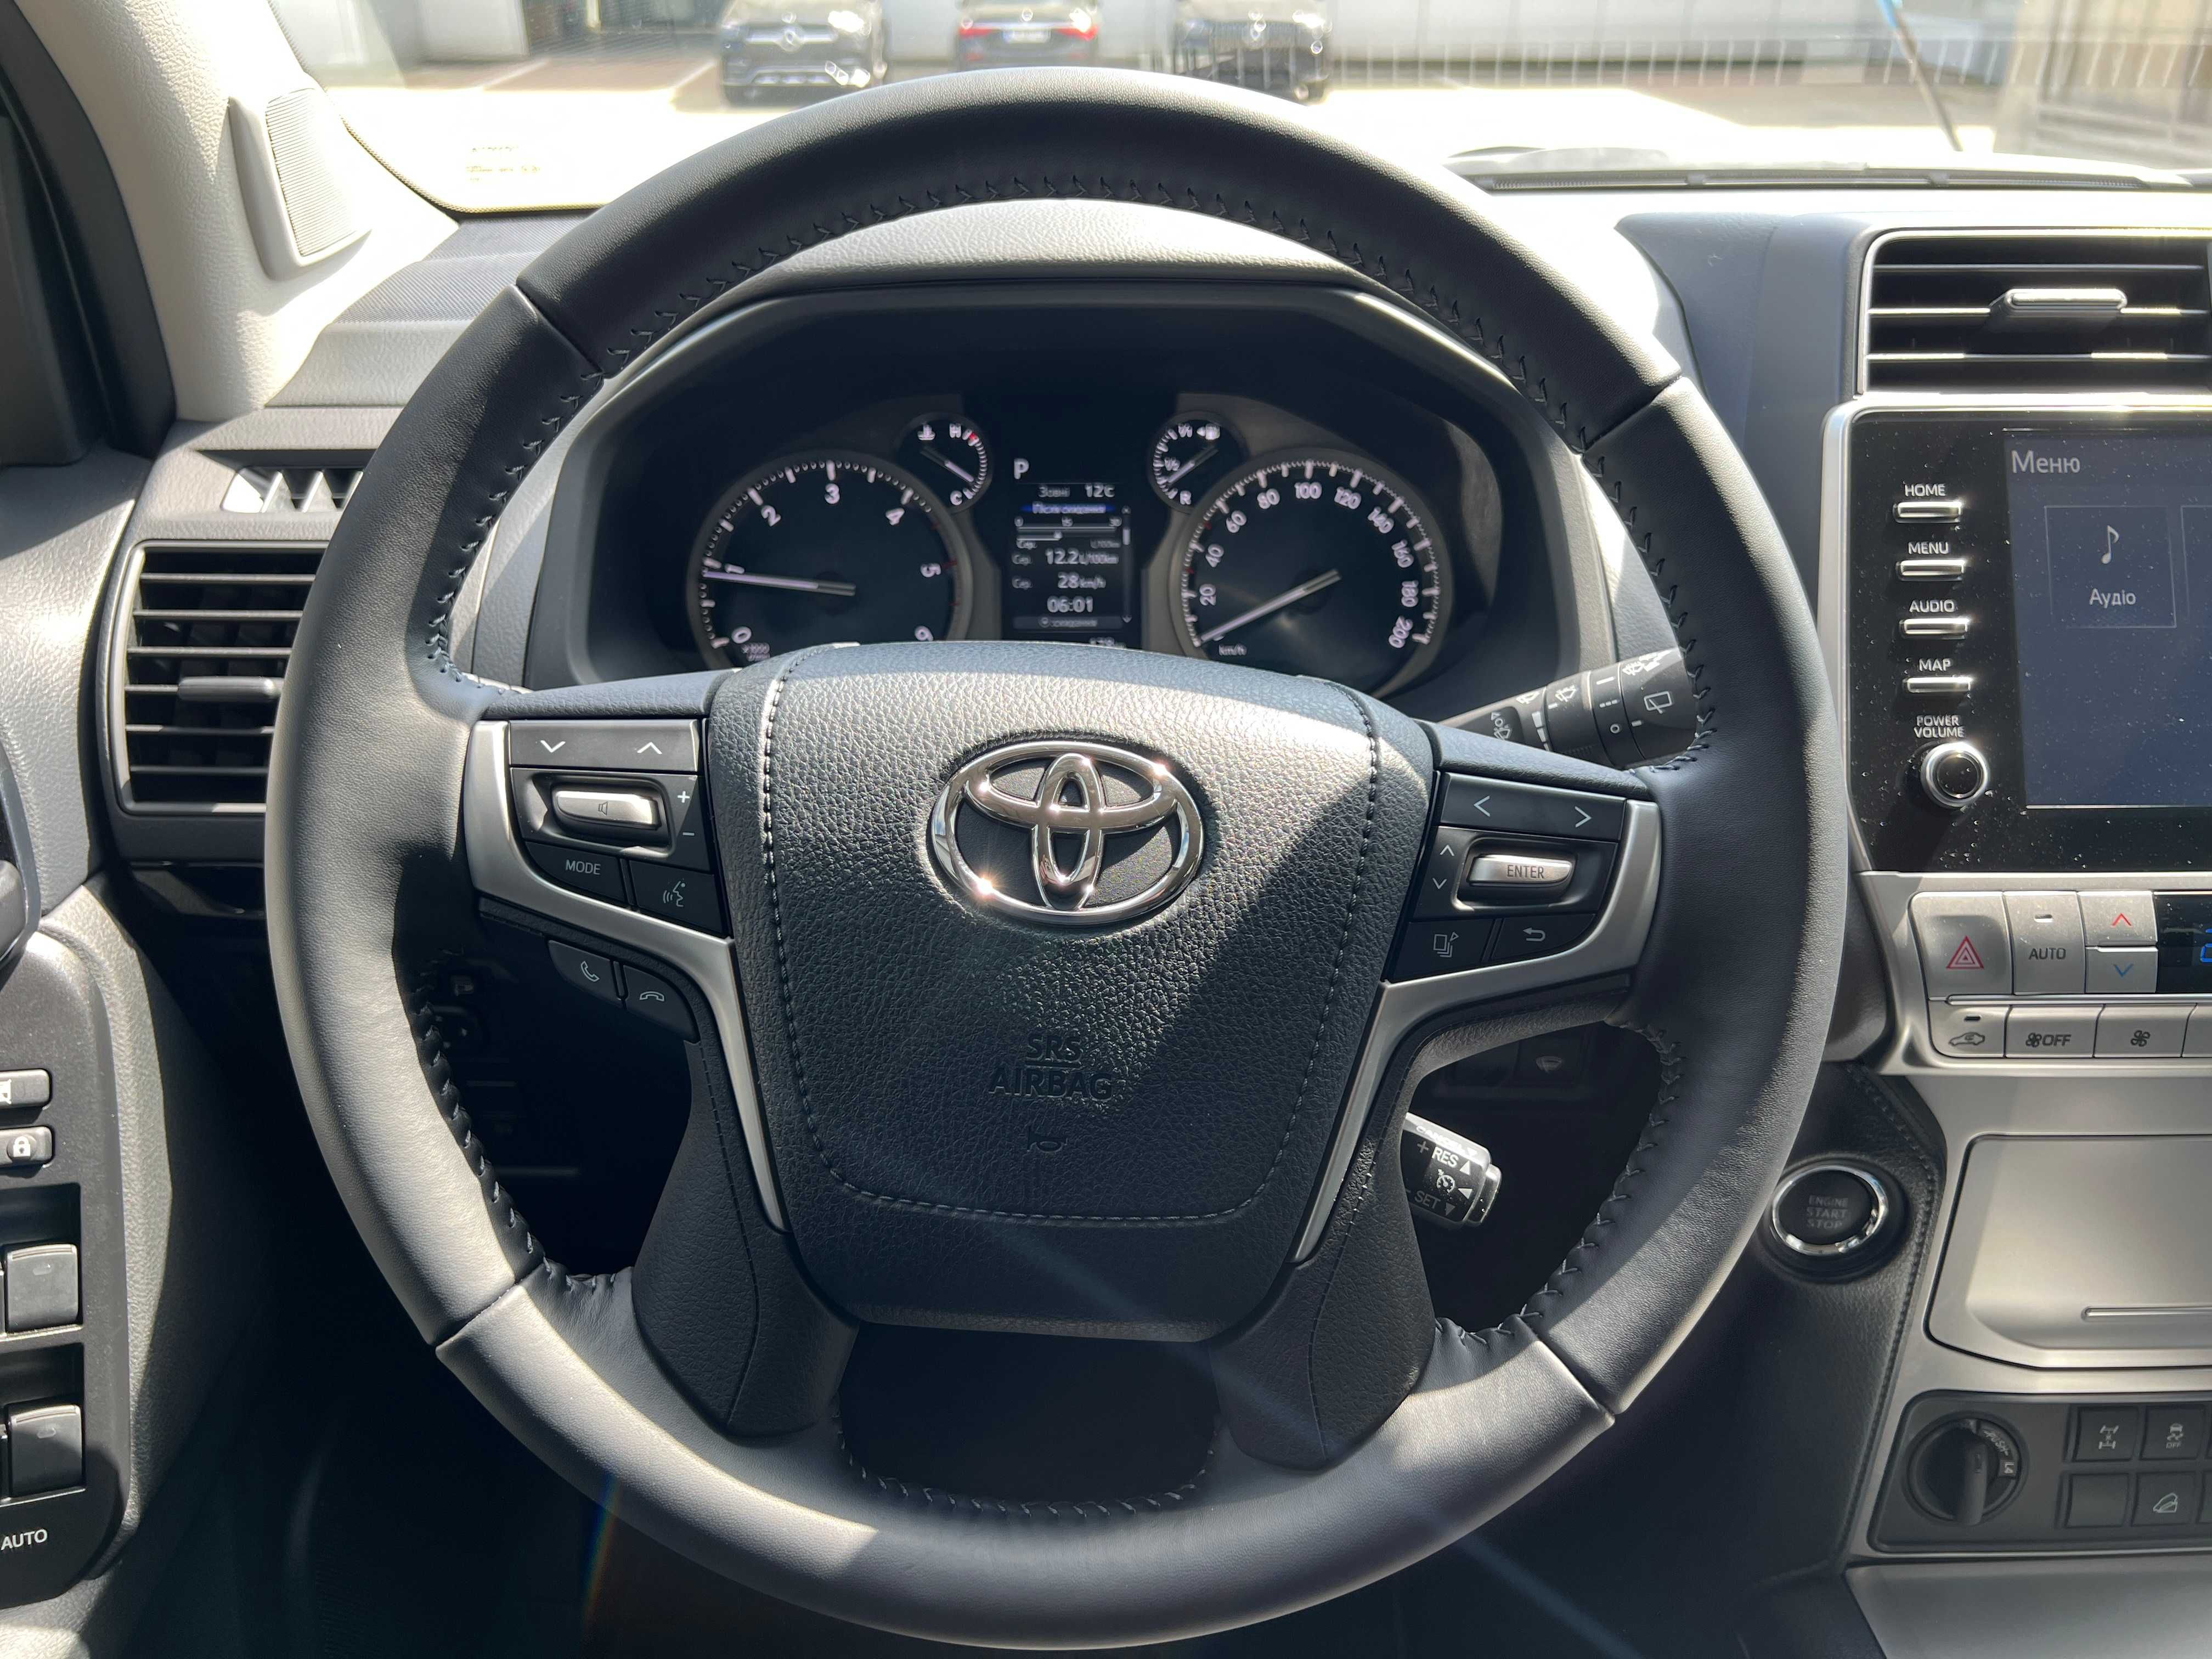 СРОЧНО! Продам Легендарный Toyota Land Cruiser Prado 2023-года 2.8TDI.